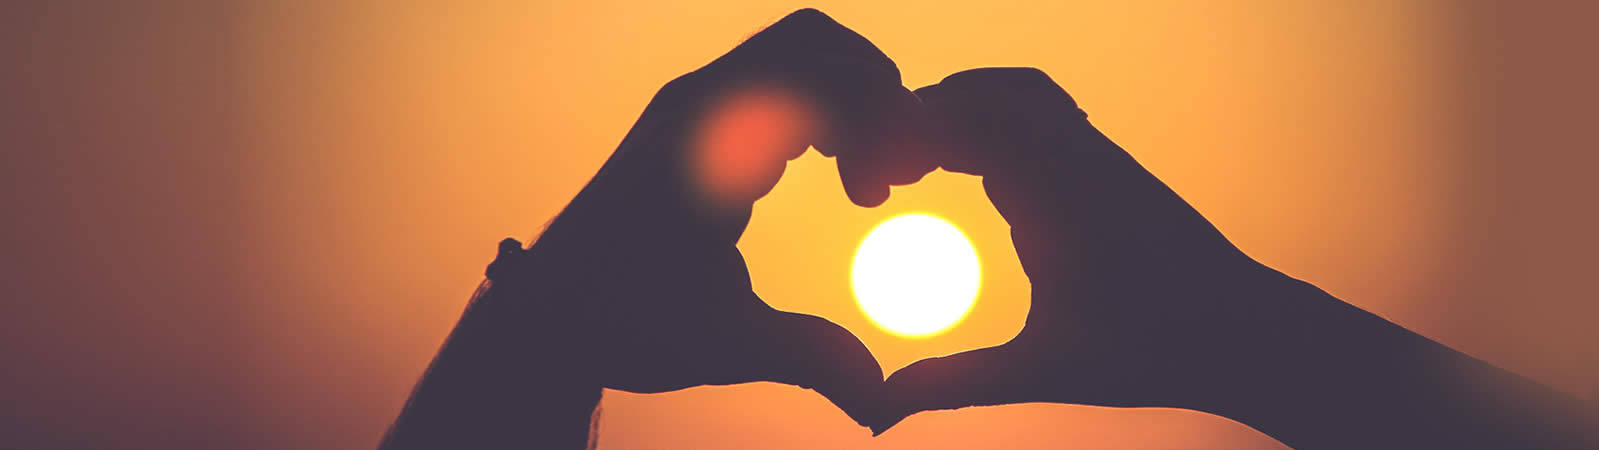 Abbildung: Palliativ - Hände formen Herz im Sonnenuntergang